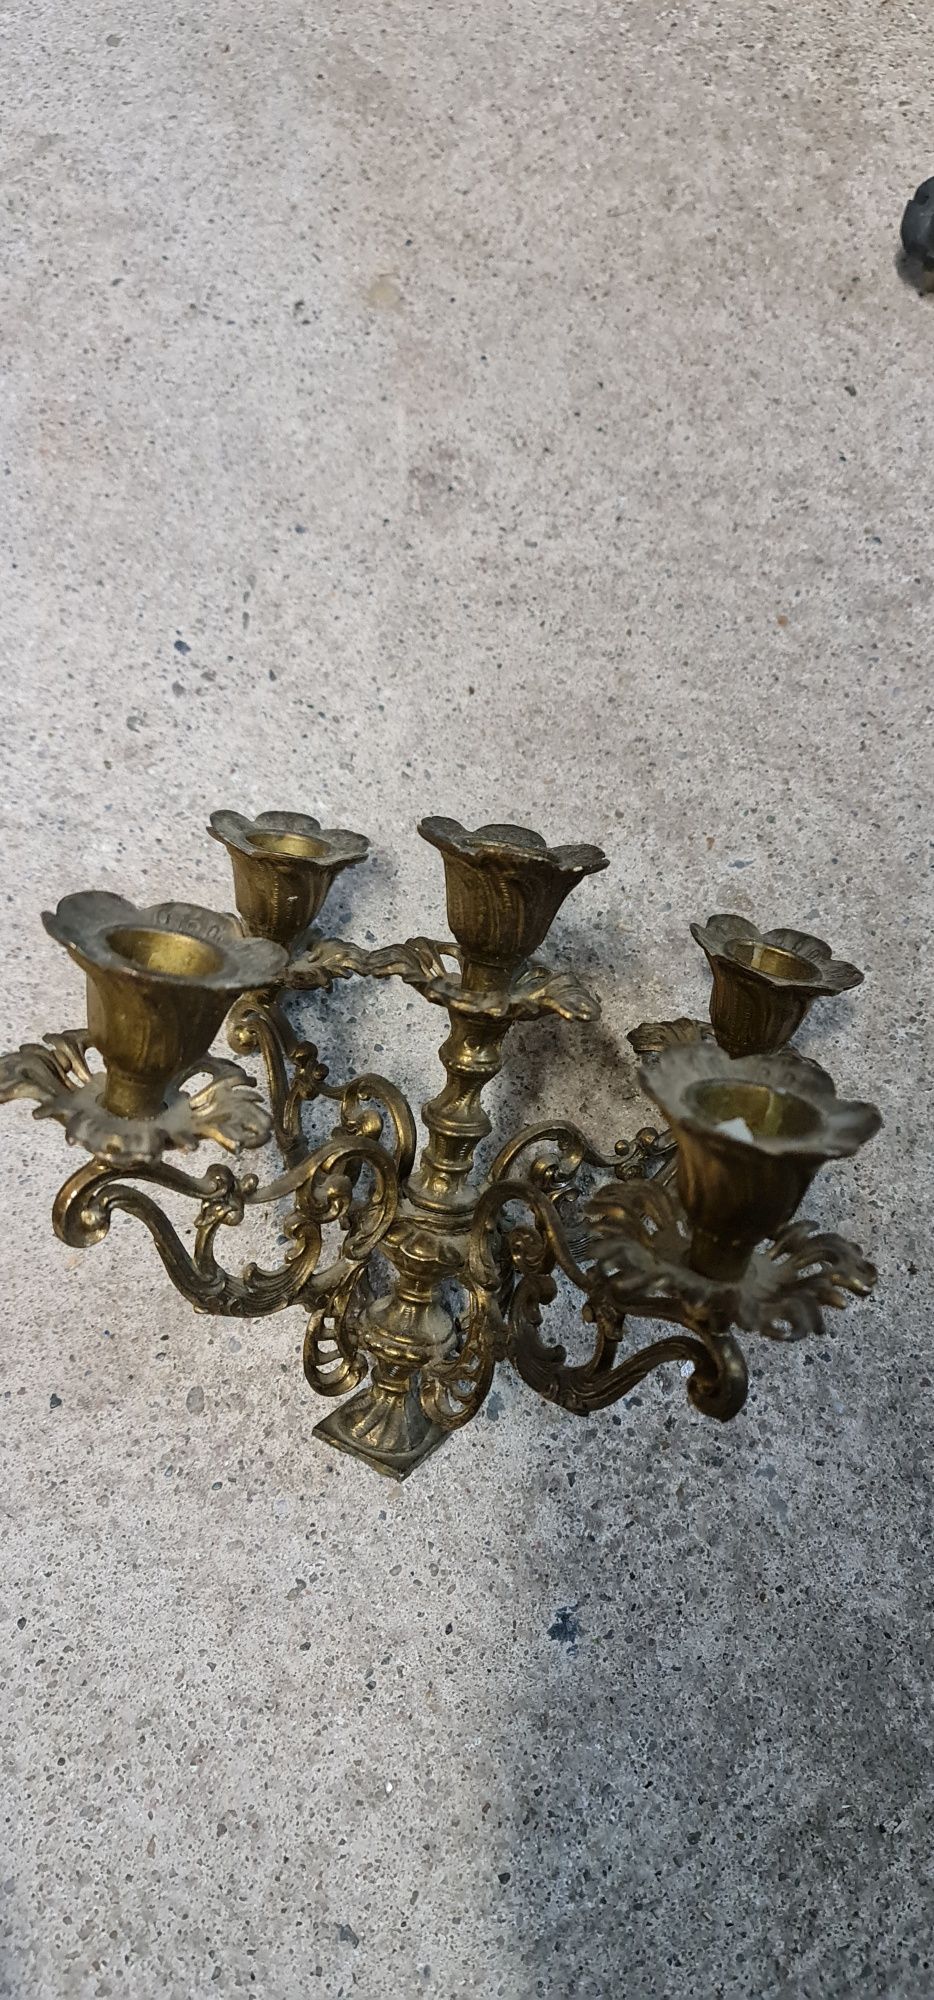 Pahet de obiecte vechi sfesnic in maniera Louis XV cu doua brate

bron